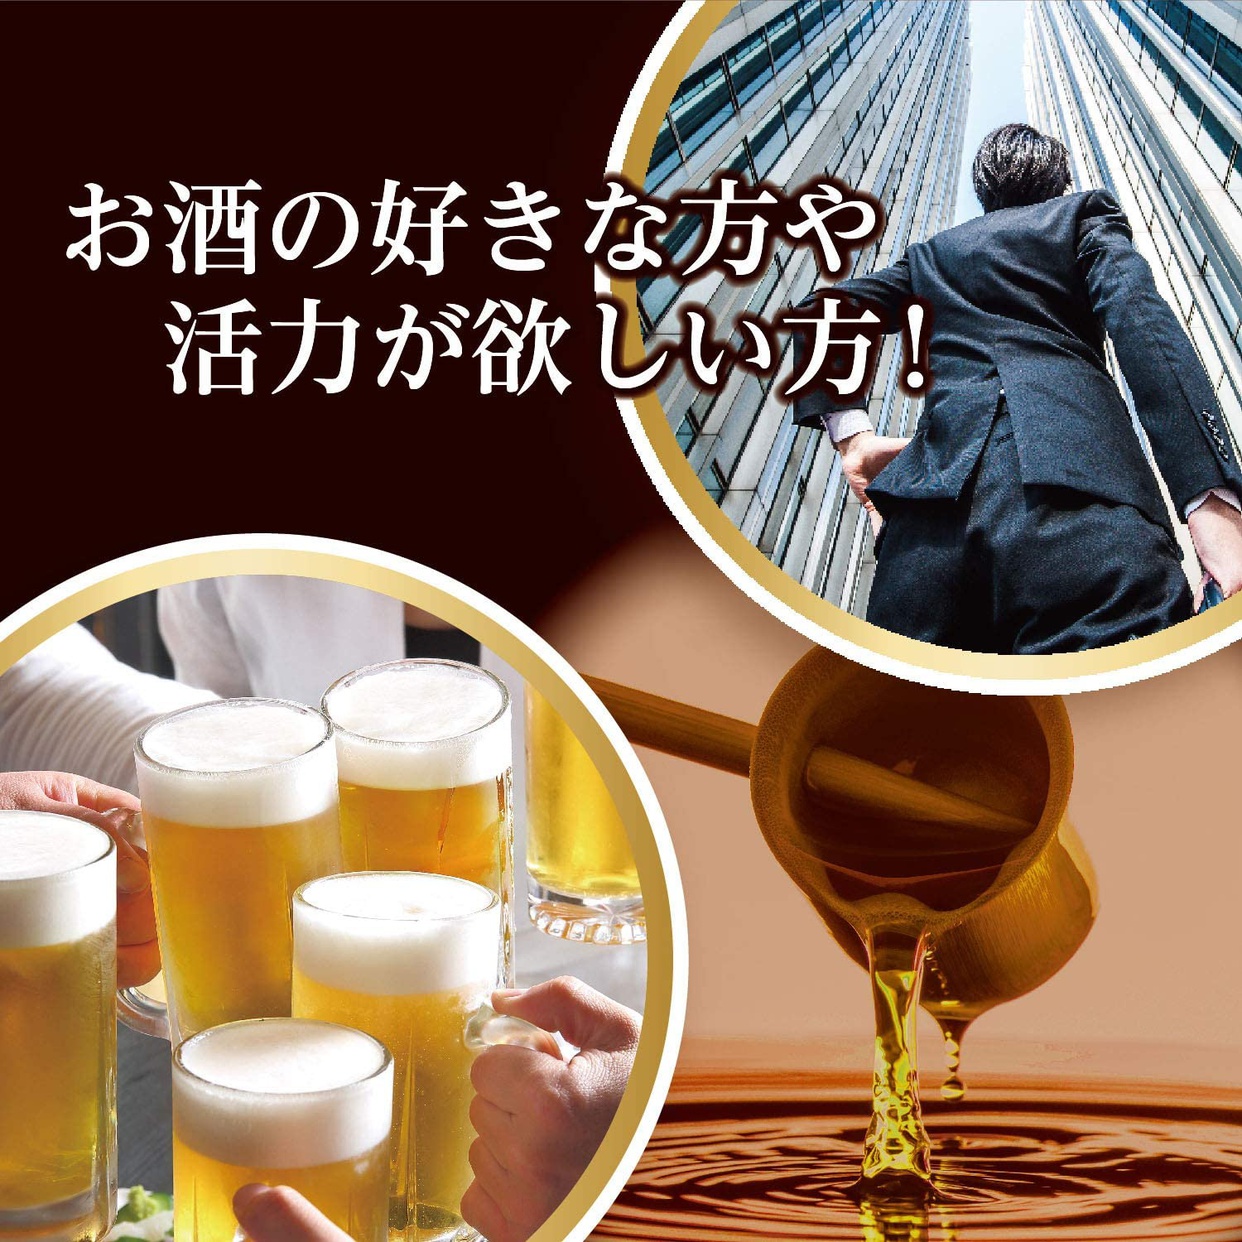 ORIHIRO(オリヒロ) しじみ高麗人参セサミンの入った黒酢にんにくの商品画像3 